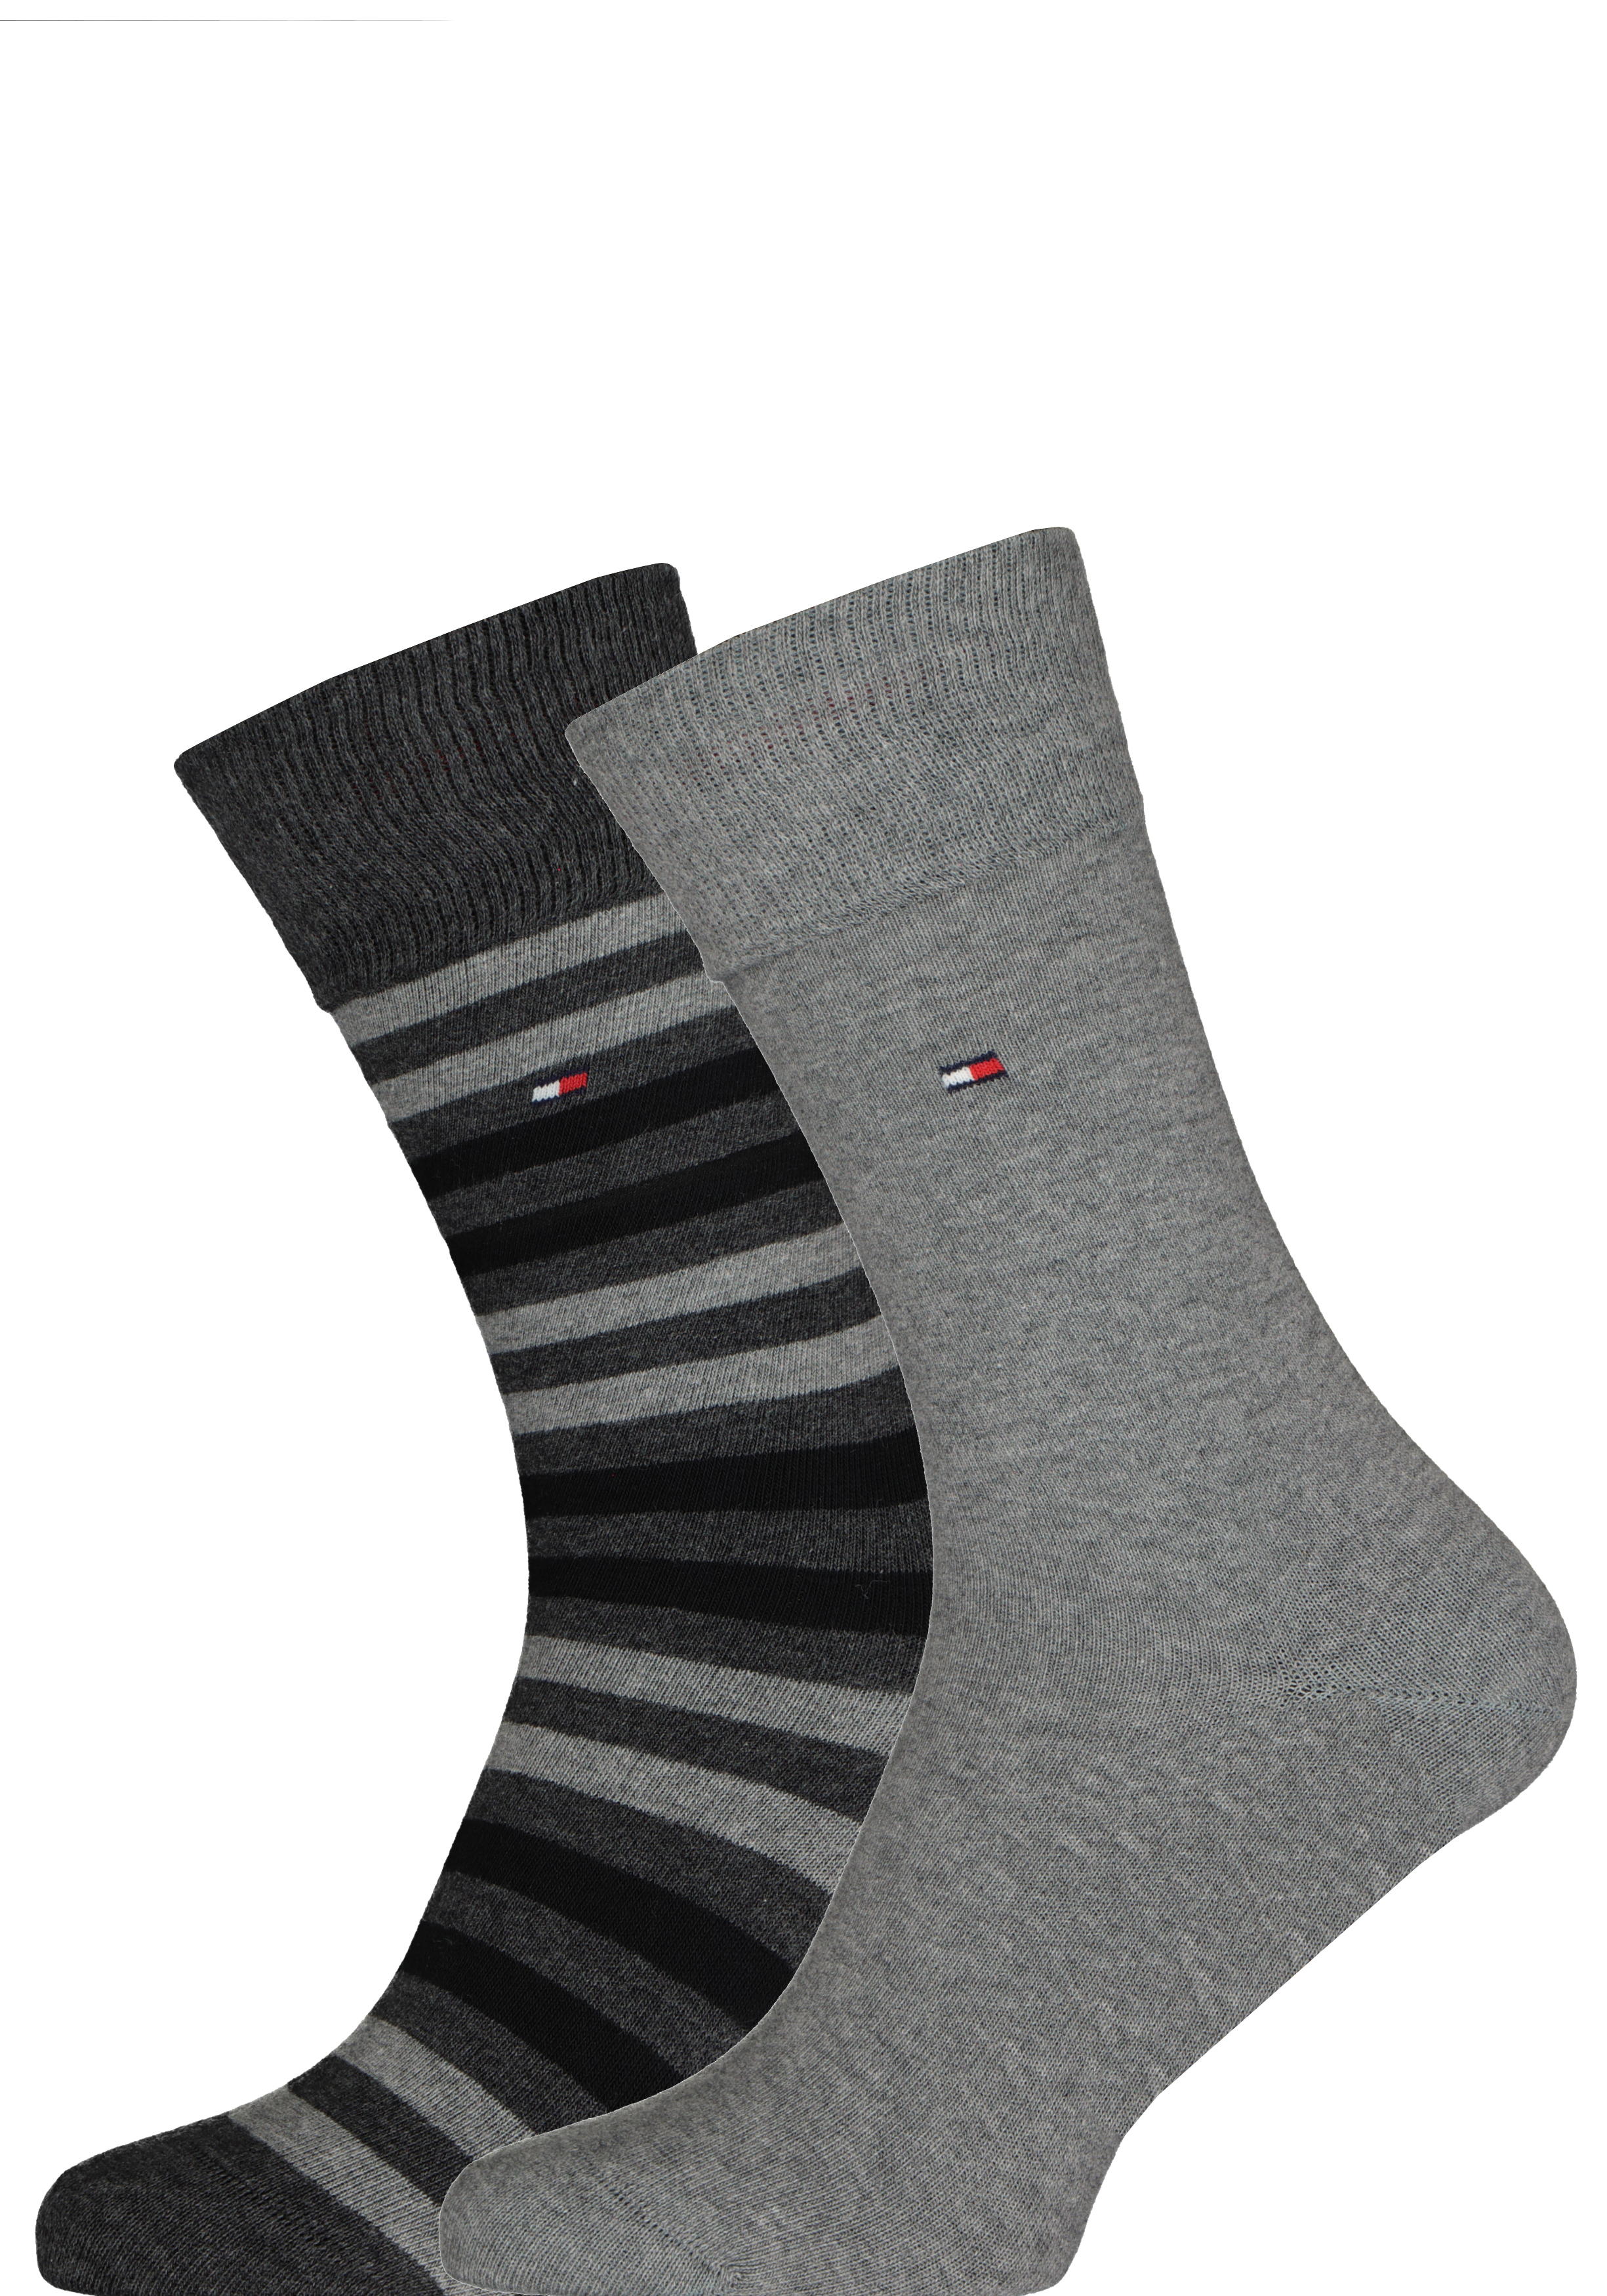 Tommy Hilfiger Duo Stripe Socks (2-pack), herensokken katoen, gestreept en uni, antraciet grijs